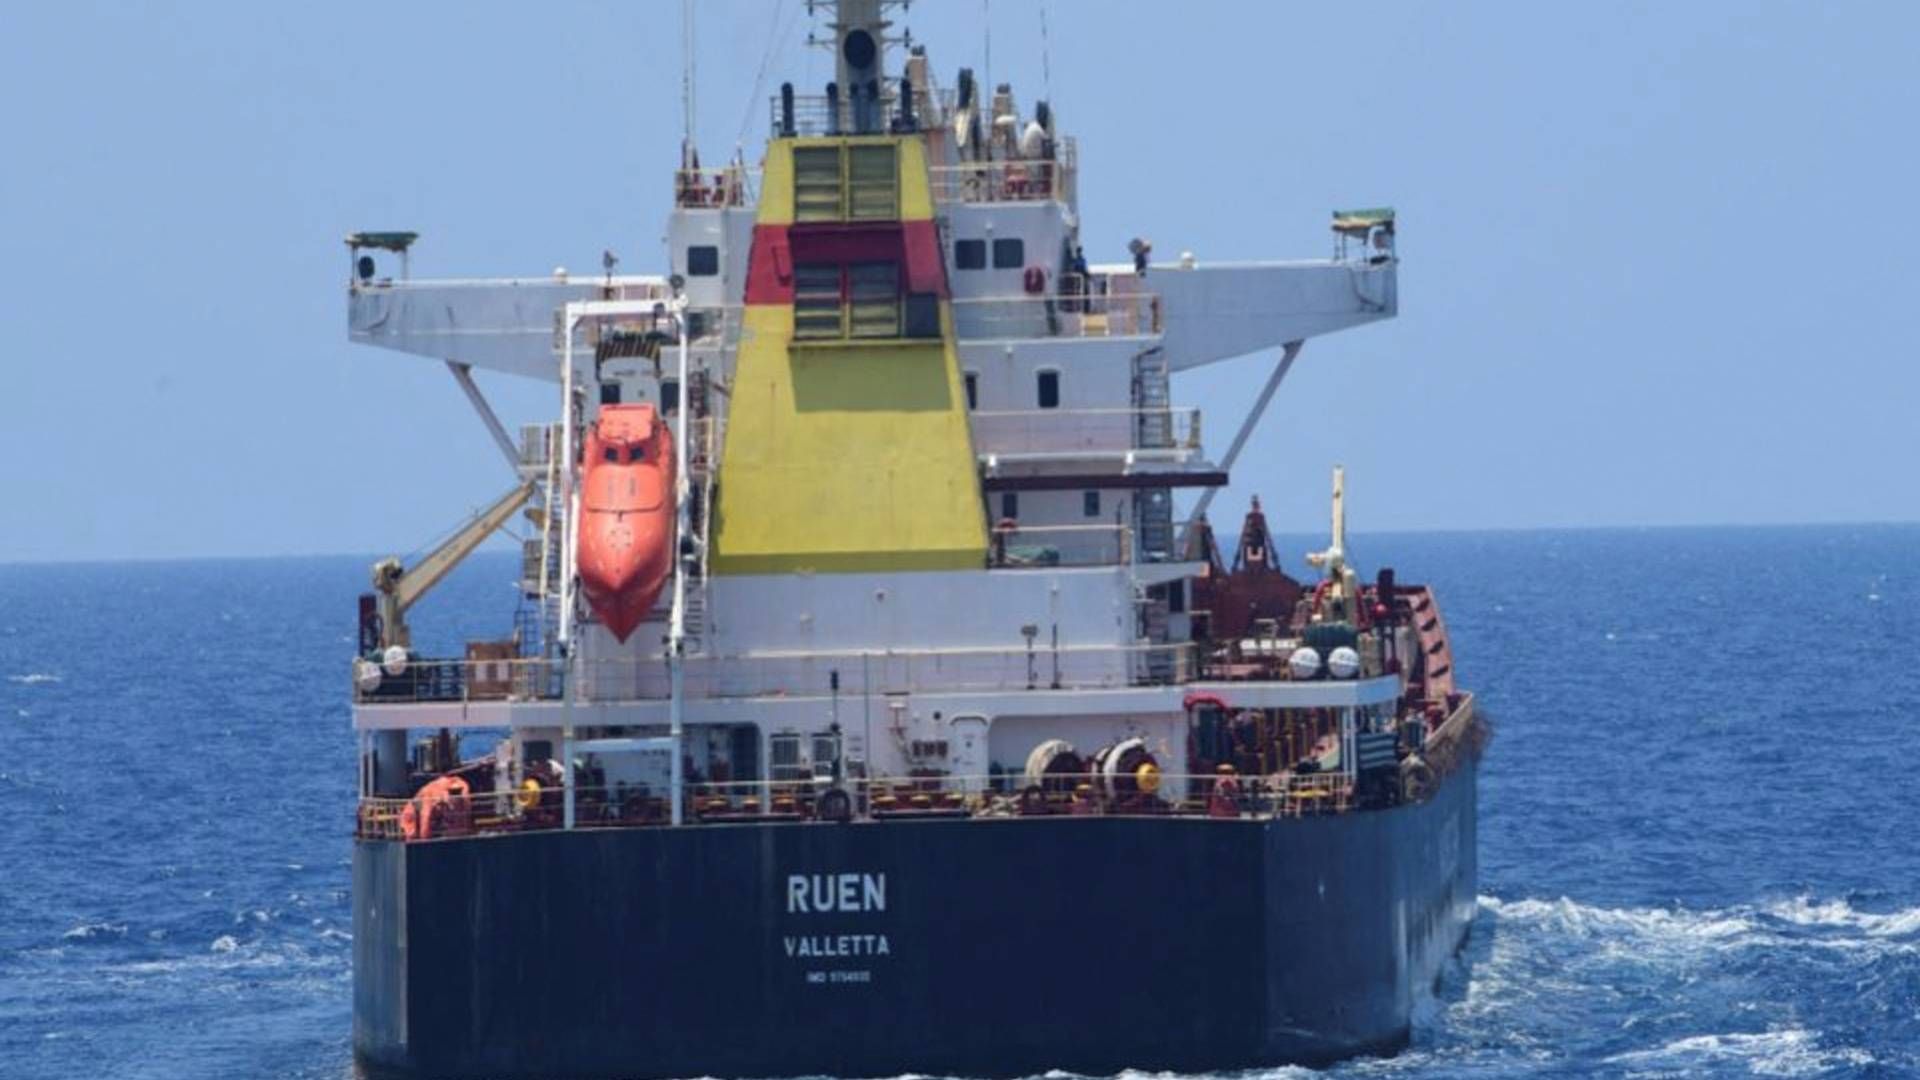 Skibet Ruen, der sejler under maltesisk flag, blev det første skib siden 2017, som somaliske pirater succesfuldt fik kapret i december. | Foto: Spokespersonnavy Via X/Reuters/Ritzau Scanpix